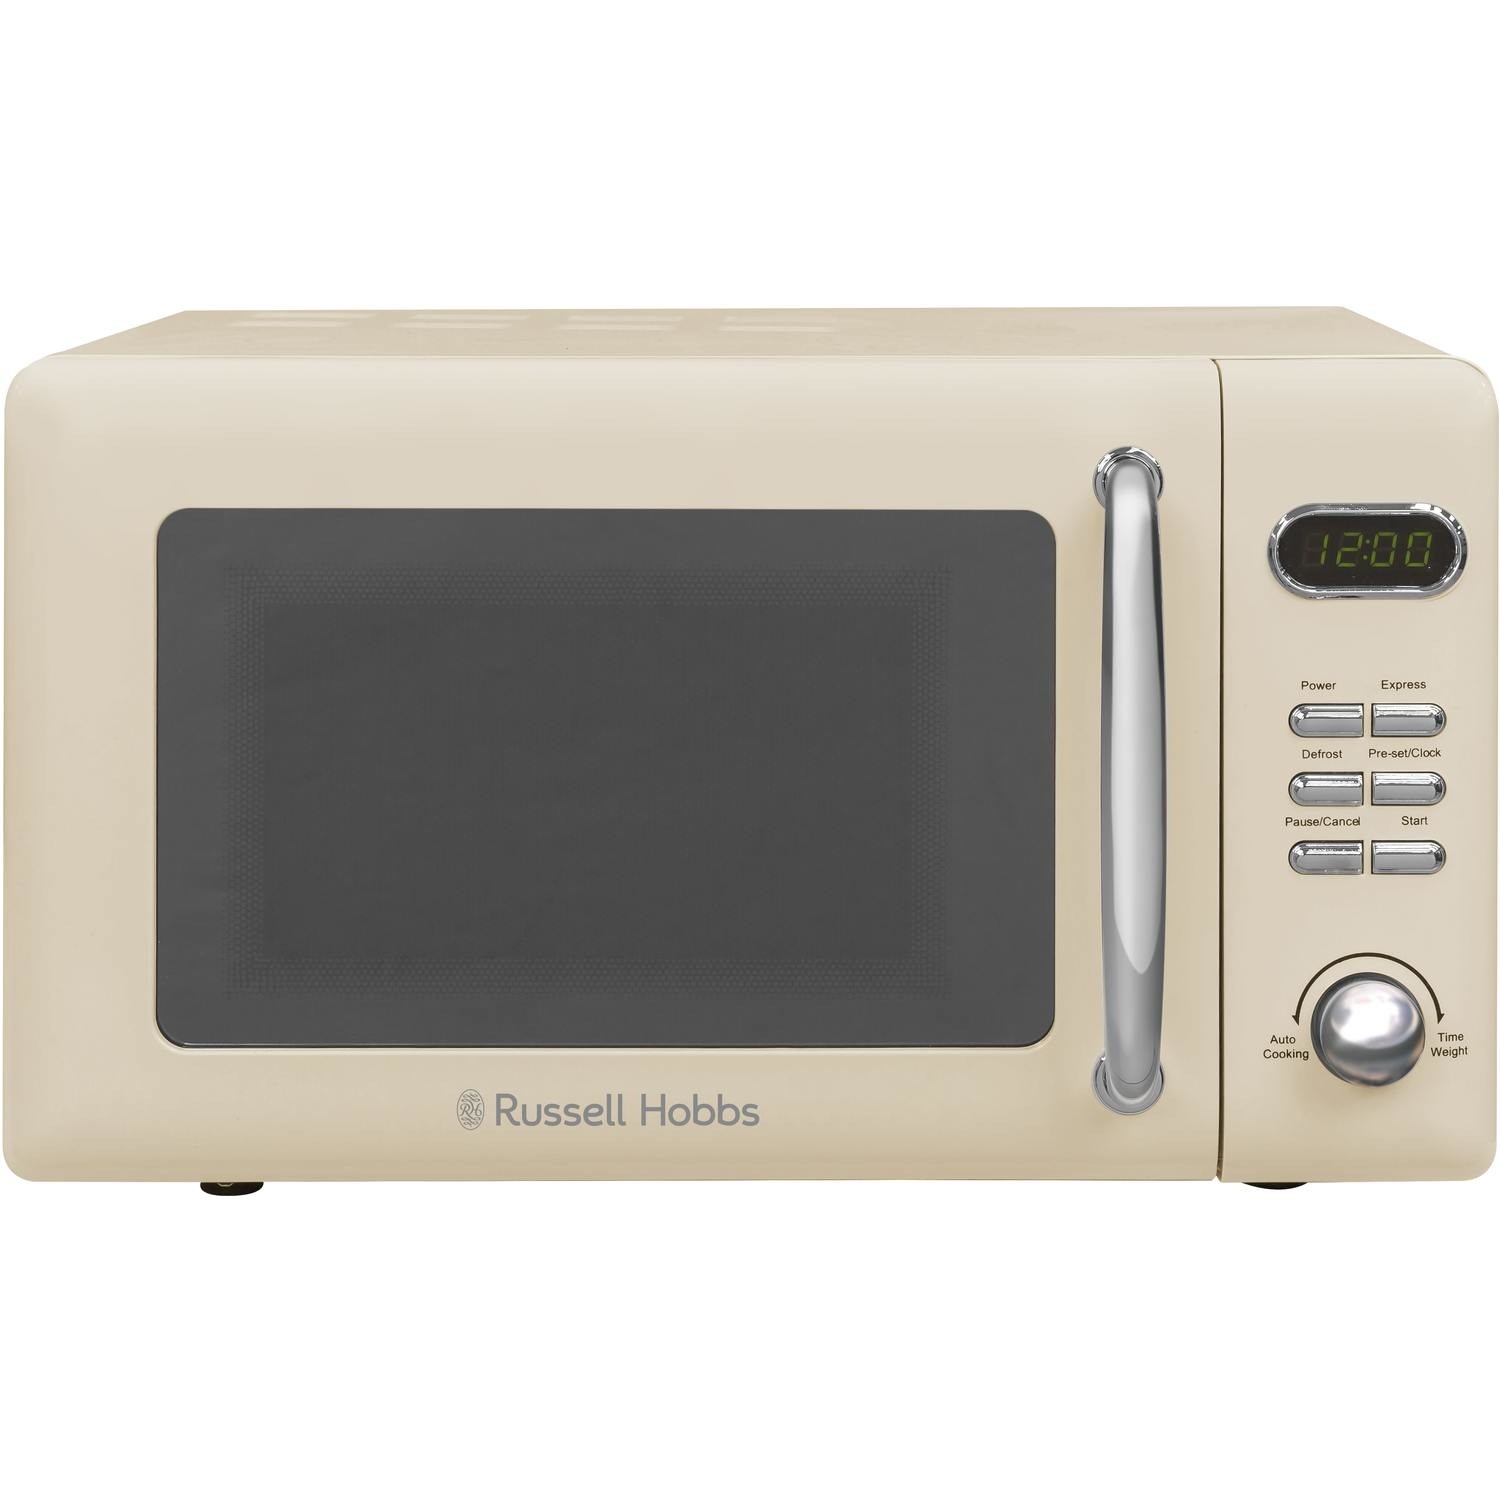 Russell Hobbs Cream Digital Microwave